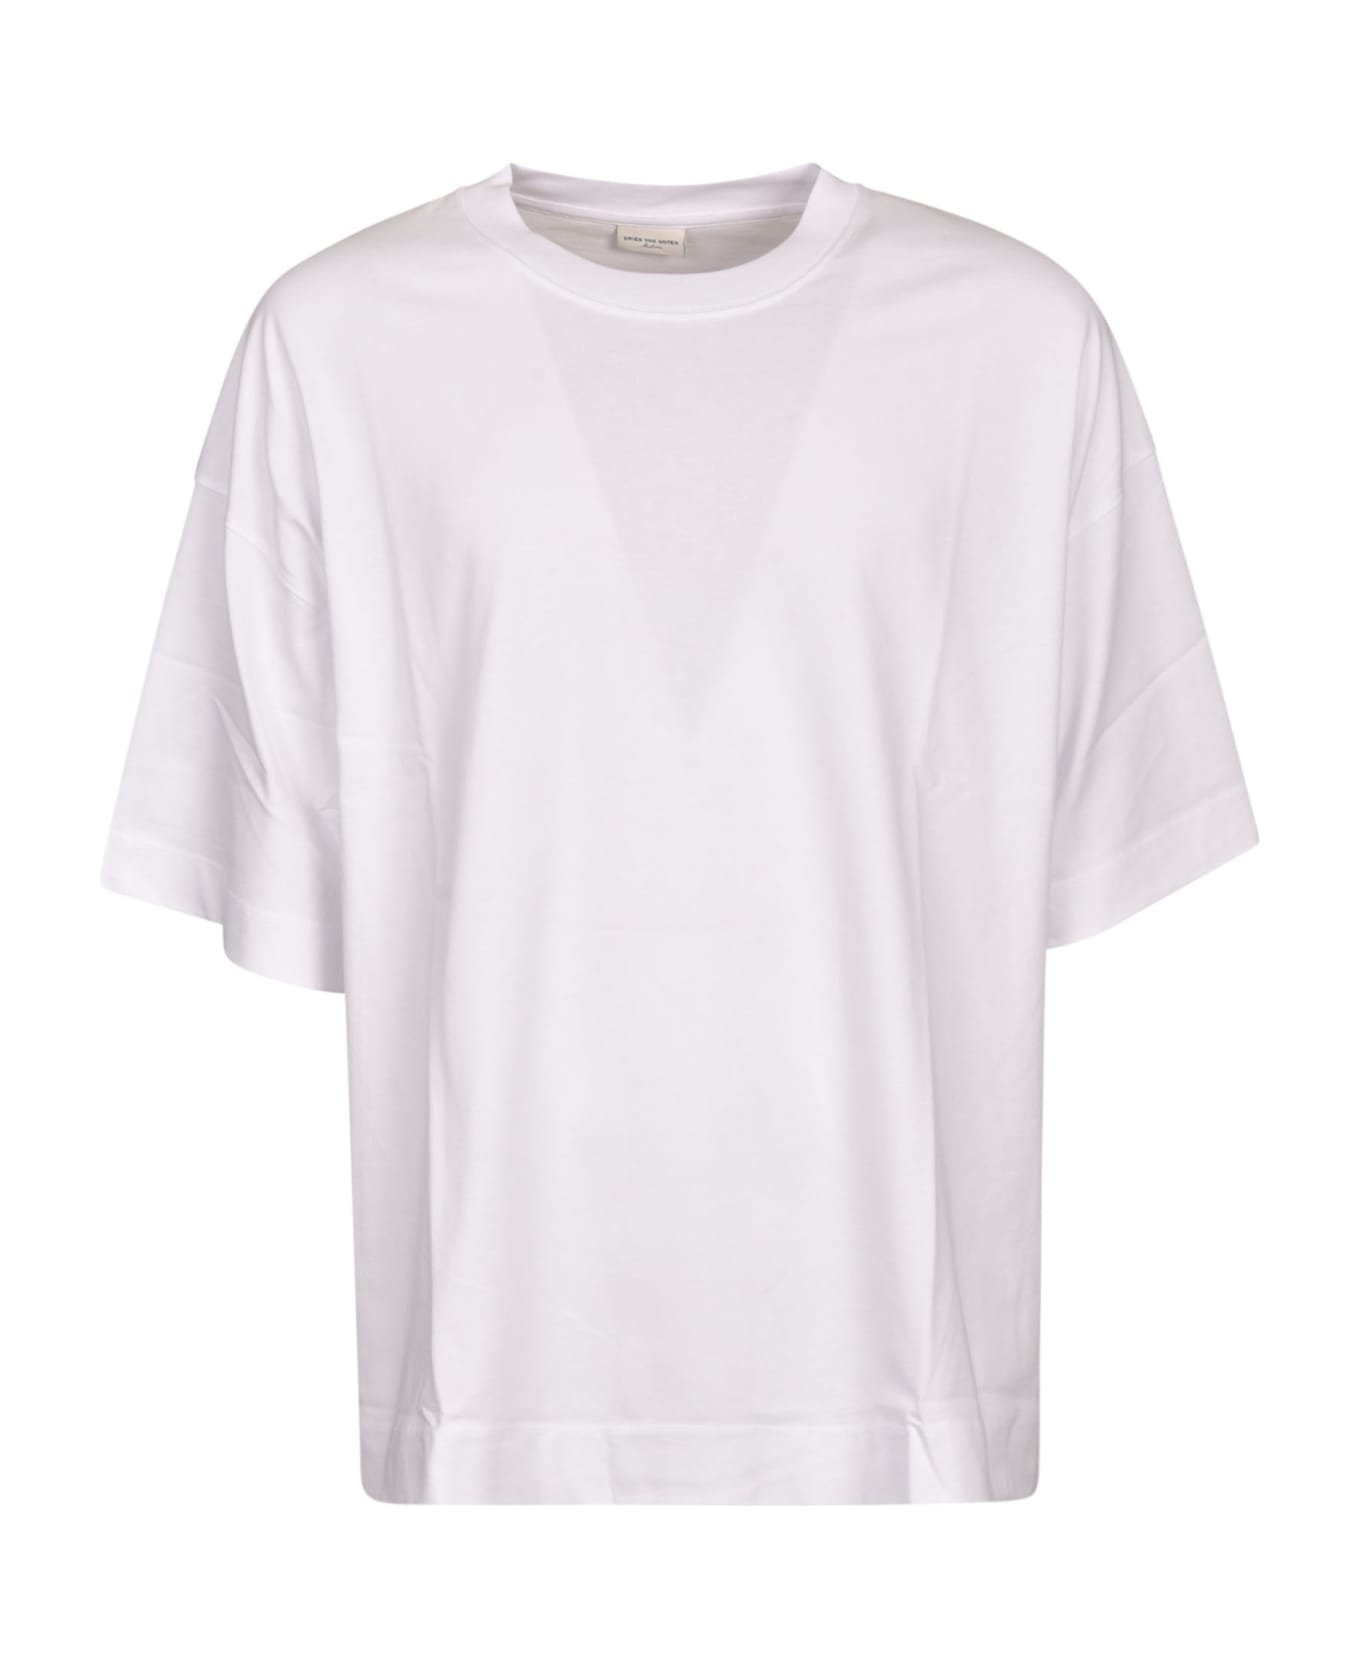 Dries Van Noten Round Neck T-shirt - White